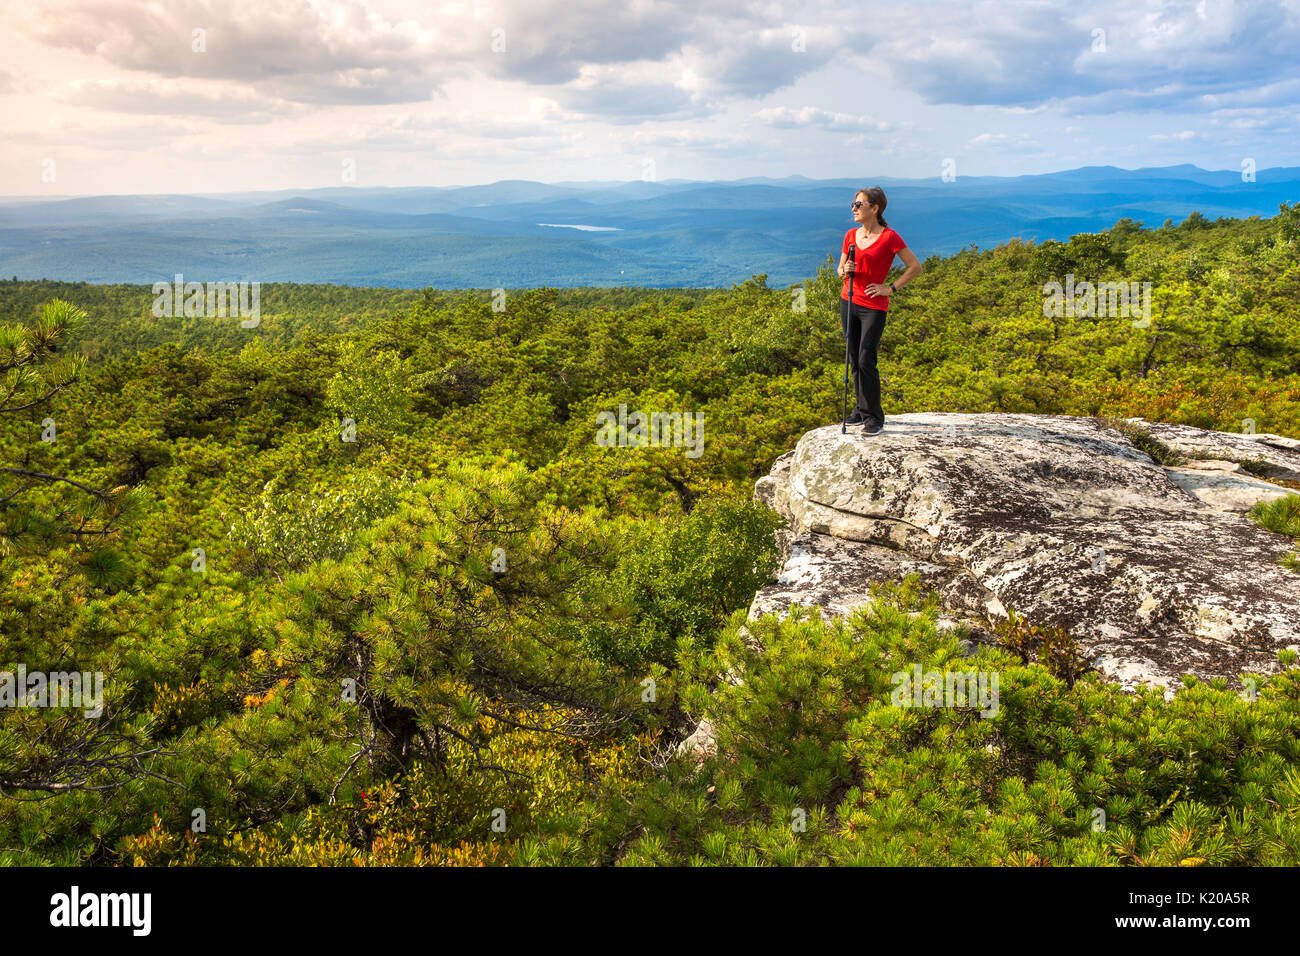 La mujer está sobre el borde del acantilado y disfruta de la naturaleza en High Point, en la parte superior de Shawangunk Ridge, en el norte del estado de Nueva York. Foto de stock